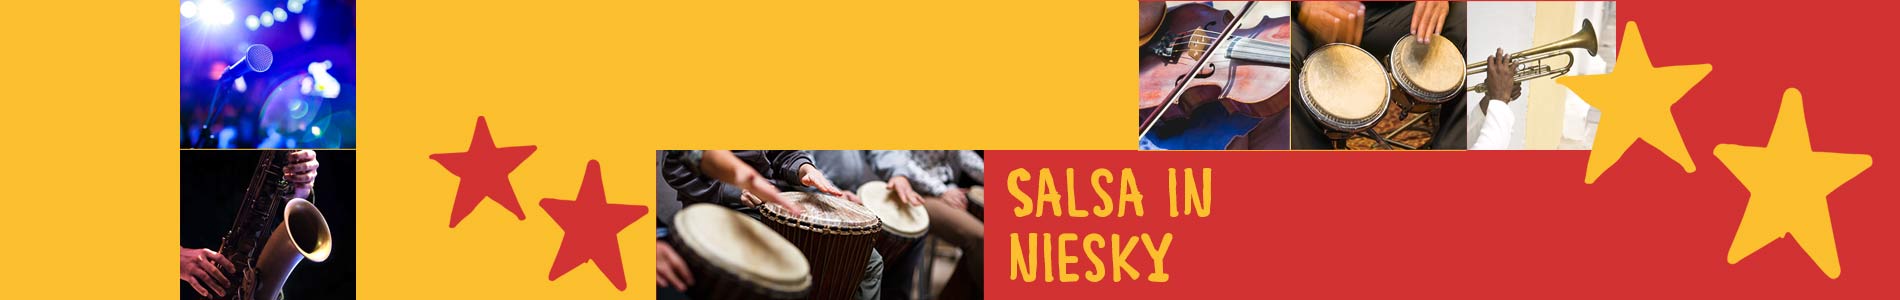 Salsa in Niesky – Salsa lernen und tanzen, Tanzkurse, Partys, Veranstaltungen